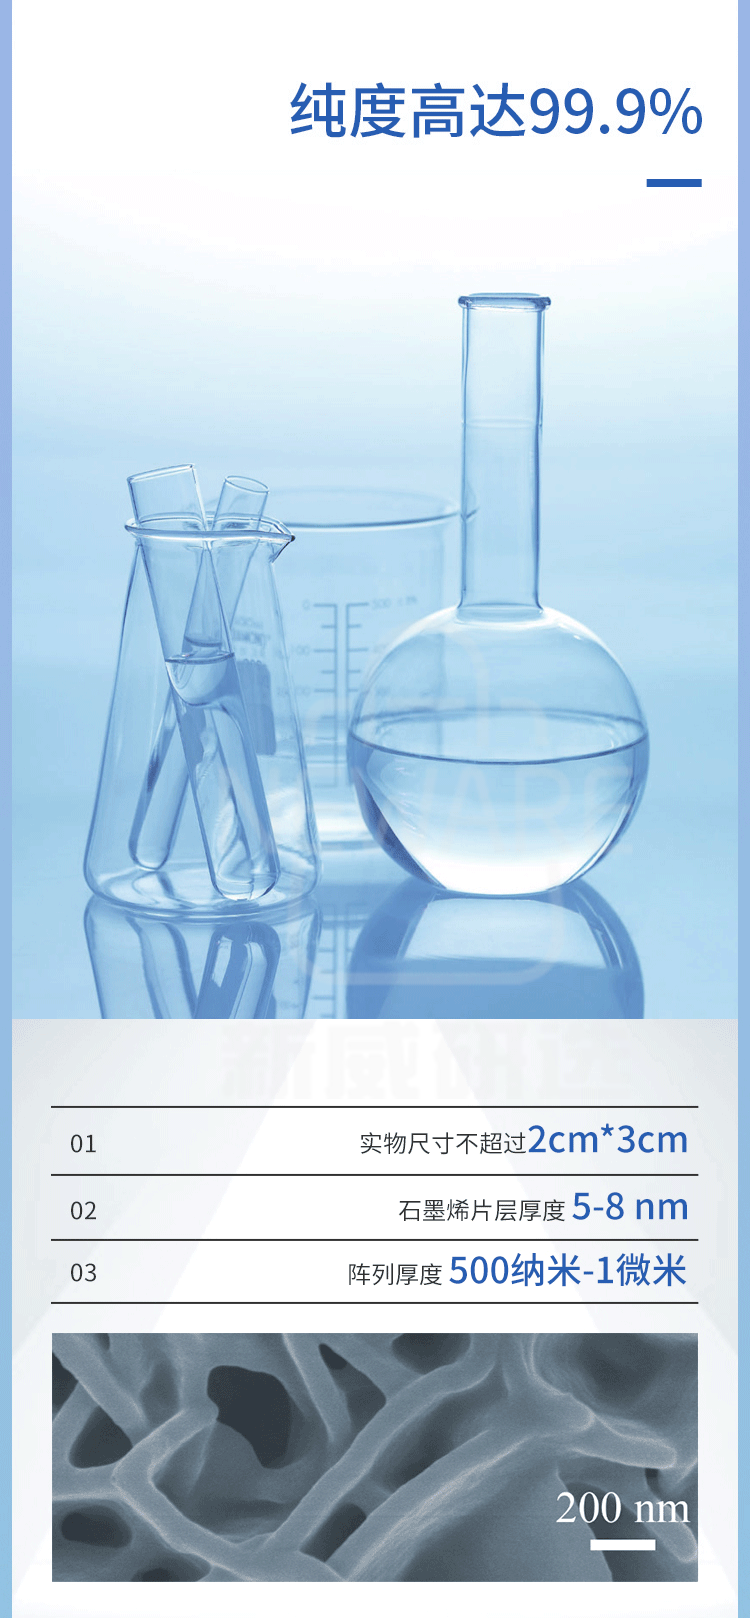 垂直石墨烯负载氢掺杂氧化钨阵列商品介绍2